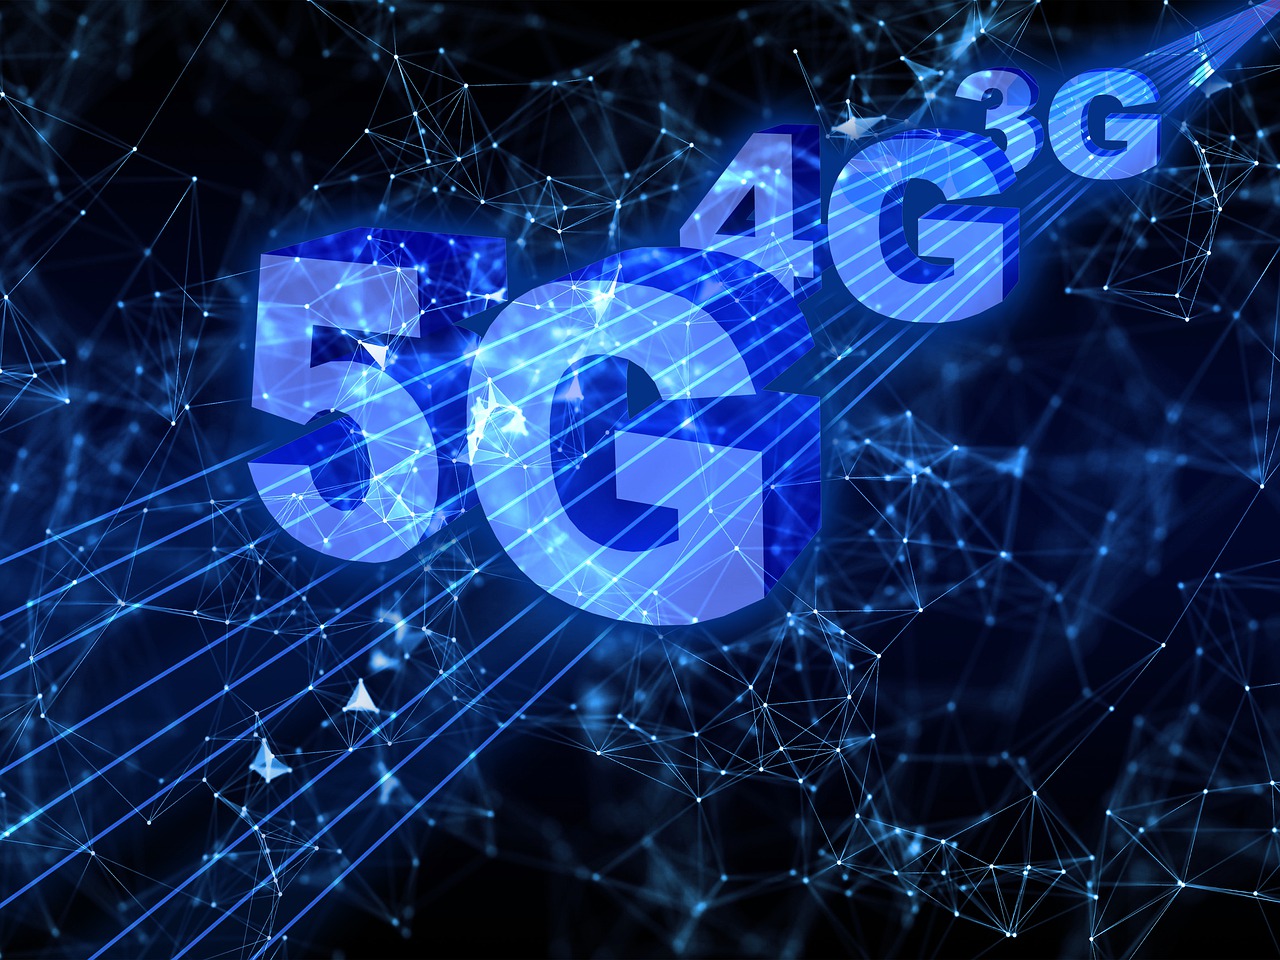 Ilustração demonstrando os símbolos 5G, 4G e 3G desenhados como se fossem linhas de conexão